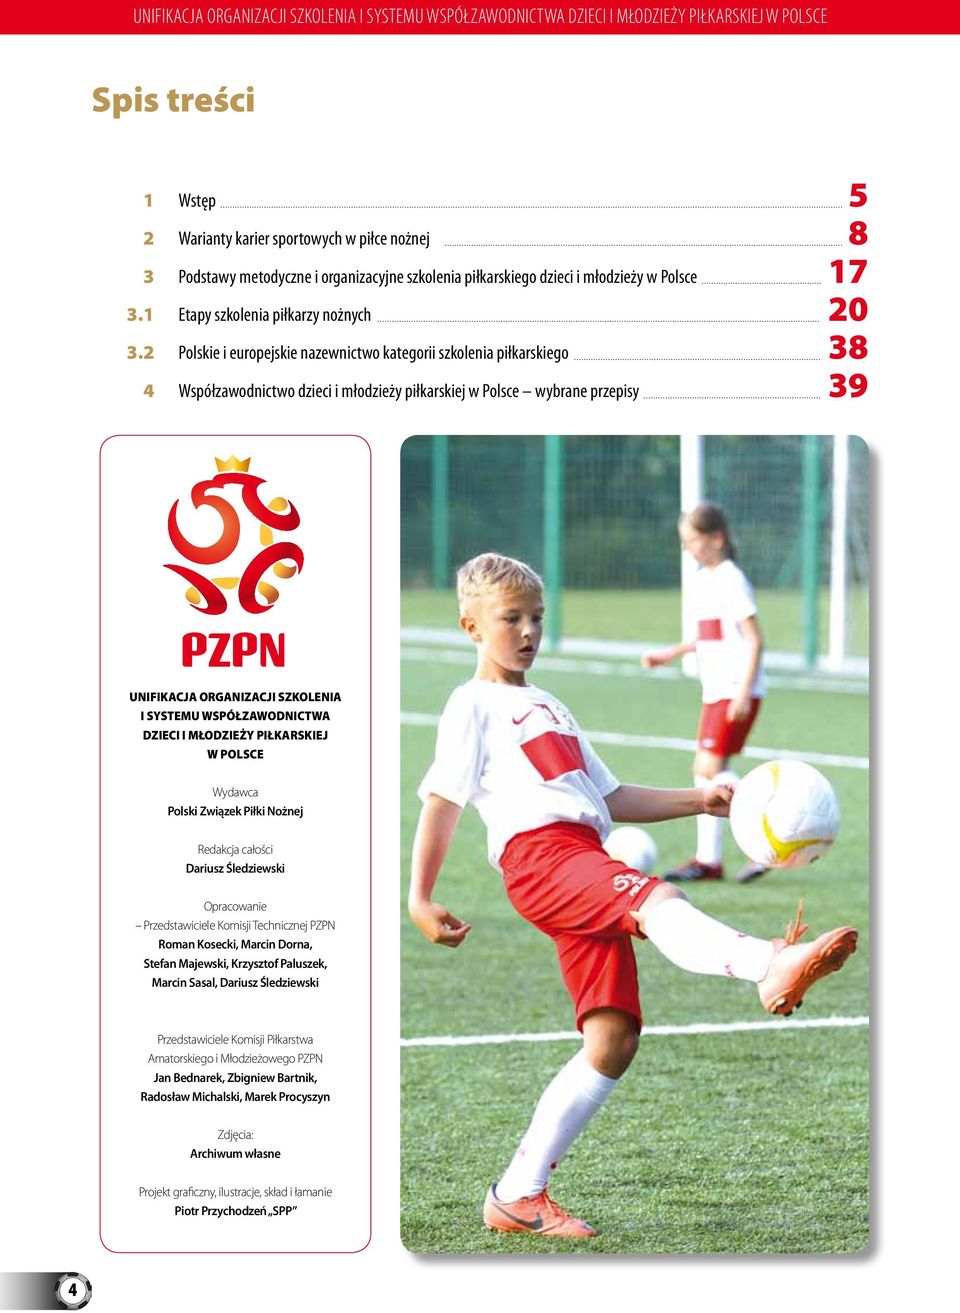 2 Polskie i europejskie nazewnictwo kategorii szkolenia piłkarskiego 4 Współzawodnictwo dzieci i młodzieży piłkarskiej w Polsce wybrane przepisy 5 8 17 20 38 39 Unifikacja organizacji szkolenia i